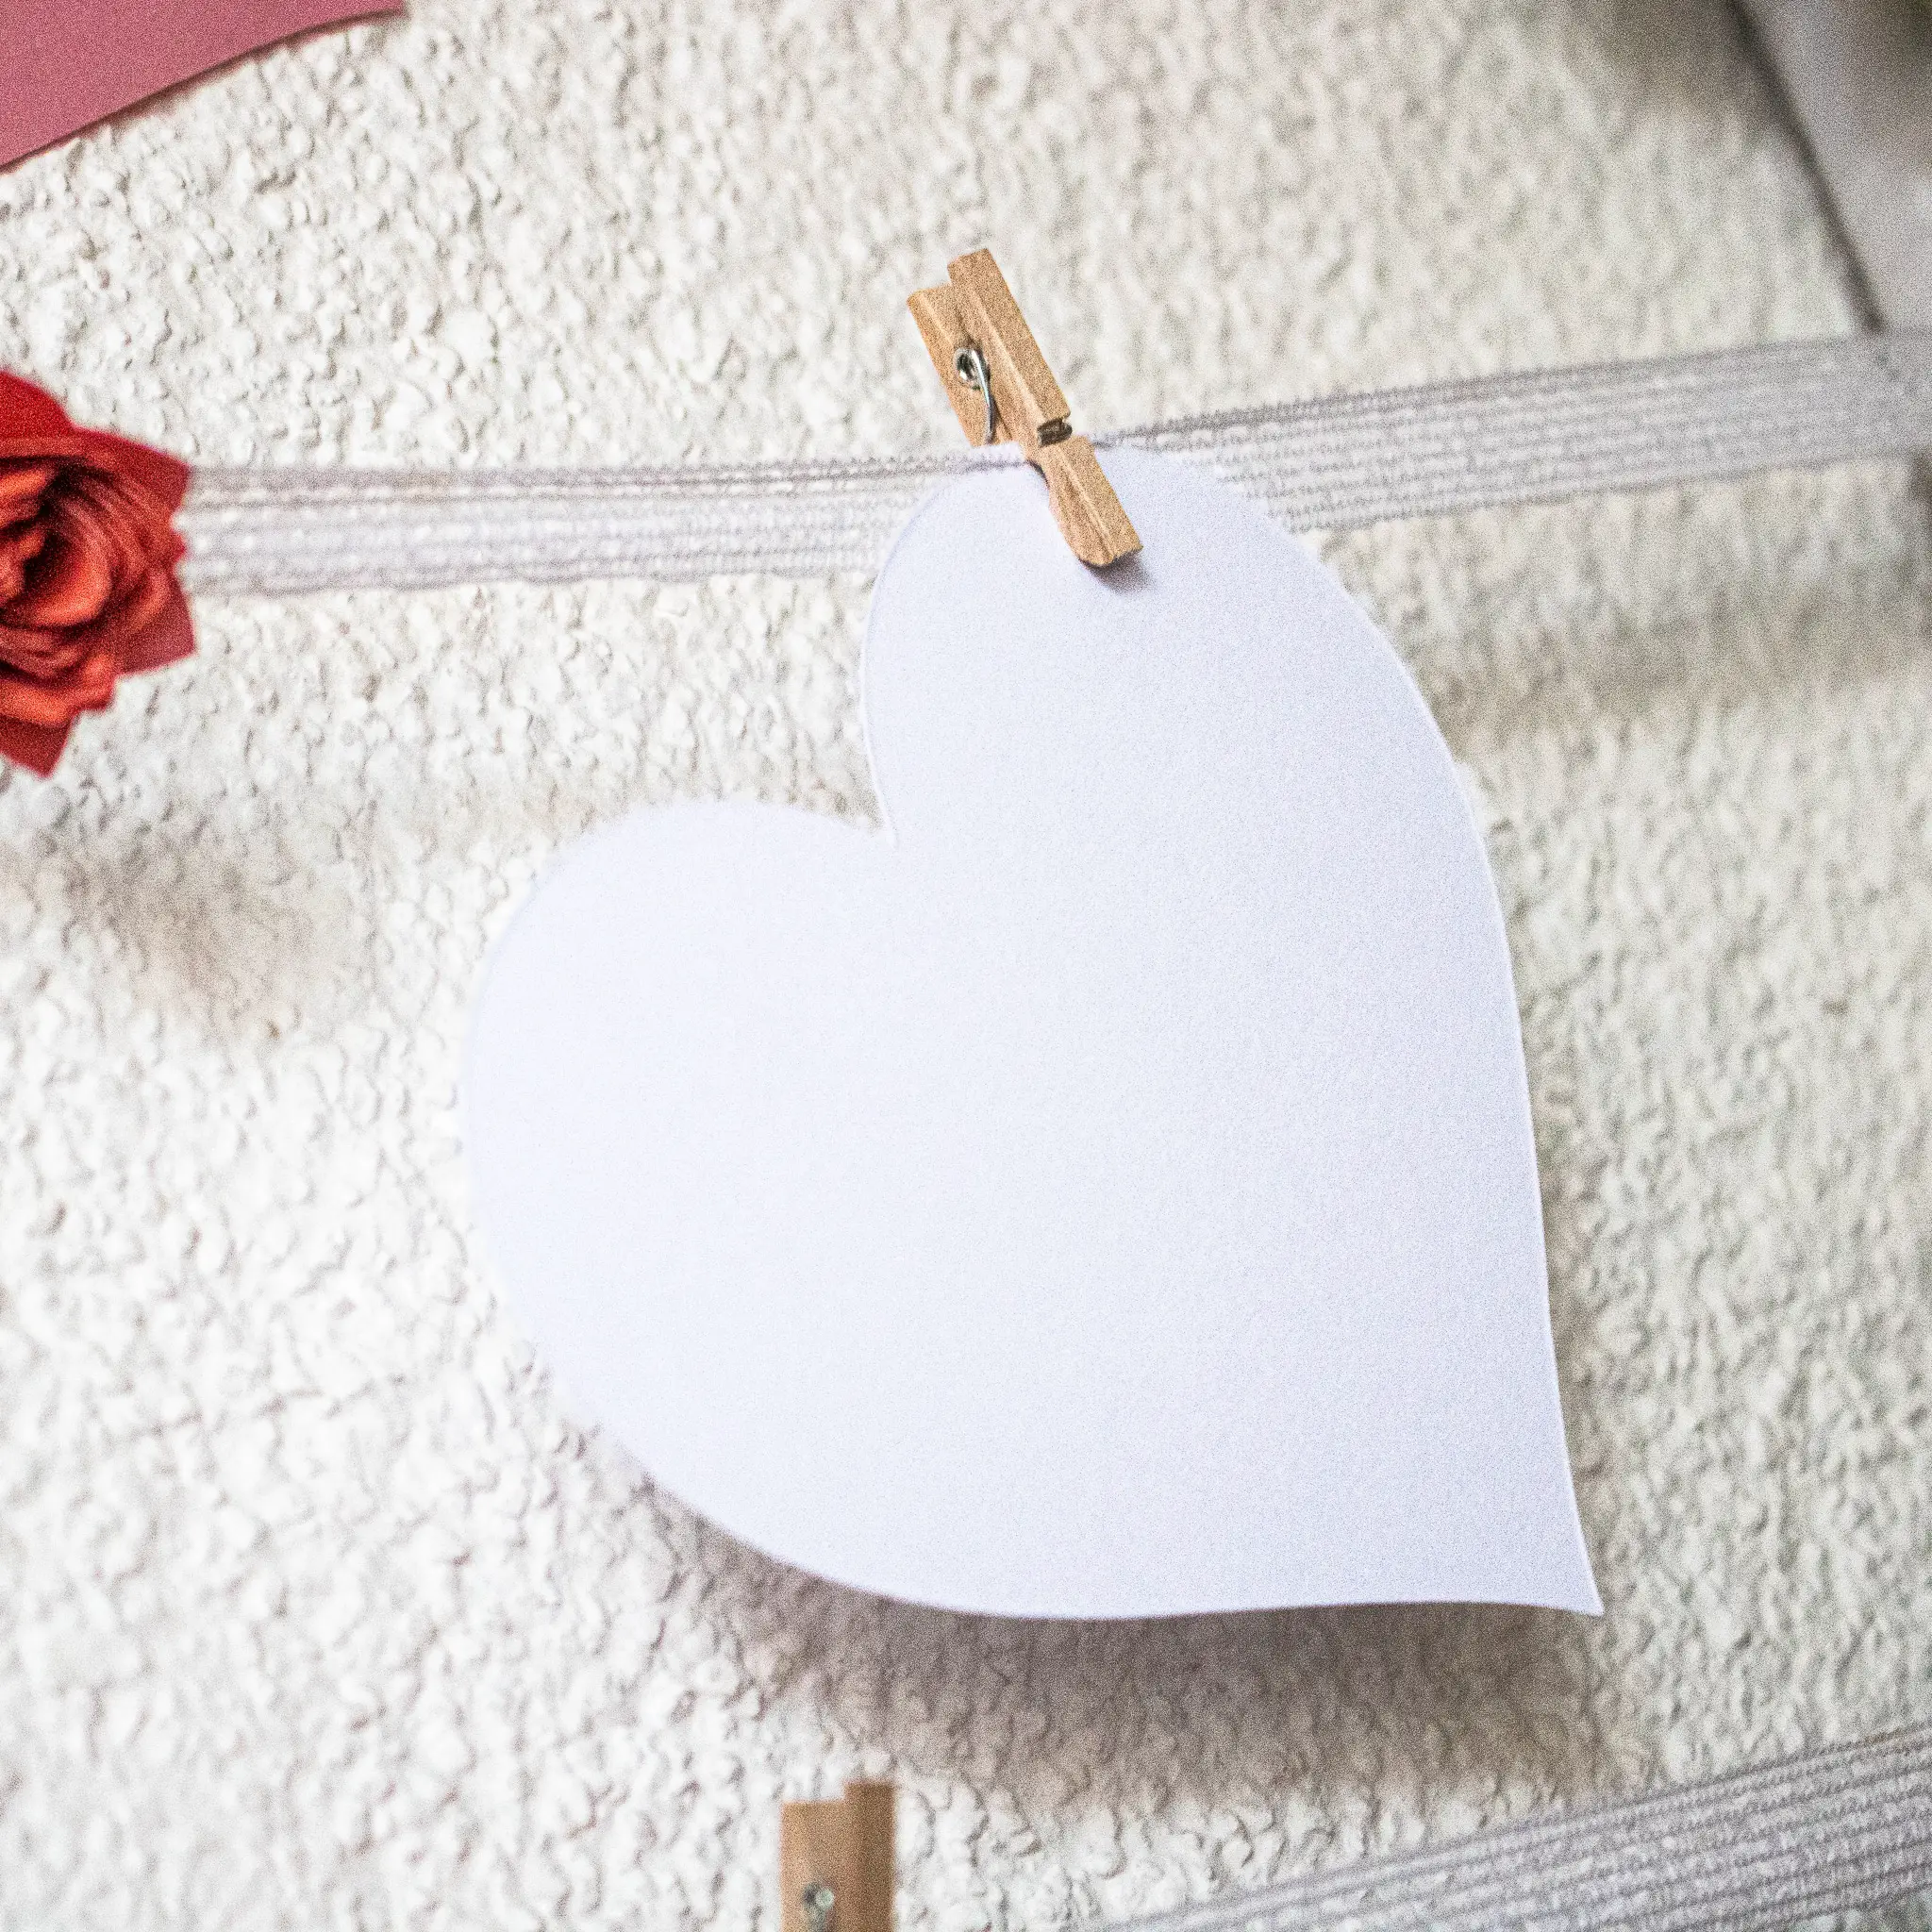 Gästebuch für Hochzeit selber machen mit Papierblumen basteln